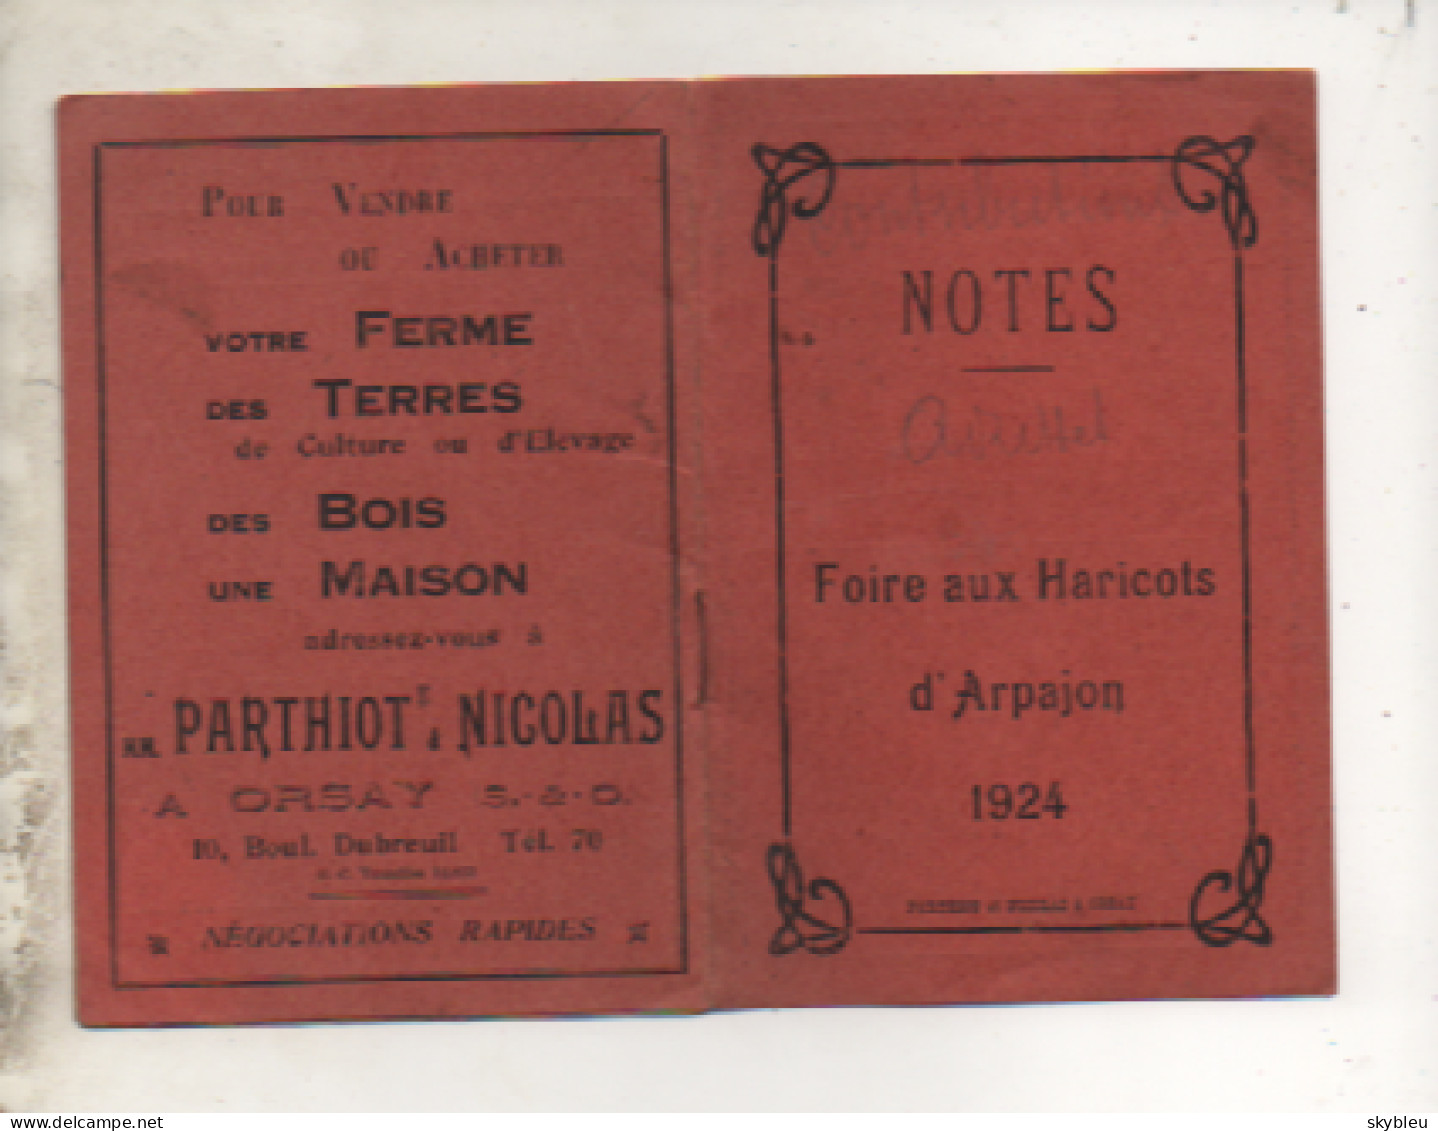 91. ARPAJON - Notes - Foire Aux Haricots D'Arpajon - 1924 -  Carnet - - Advertising